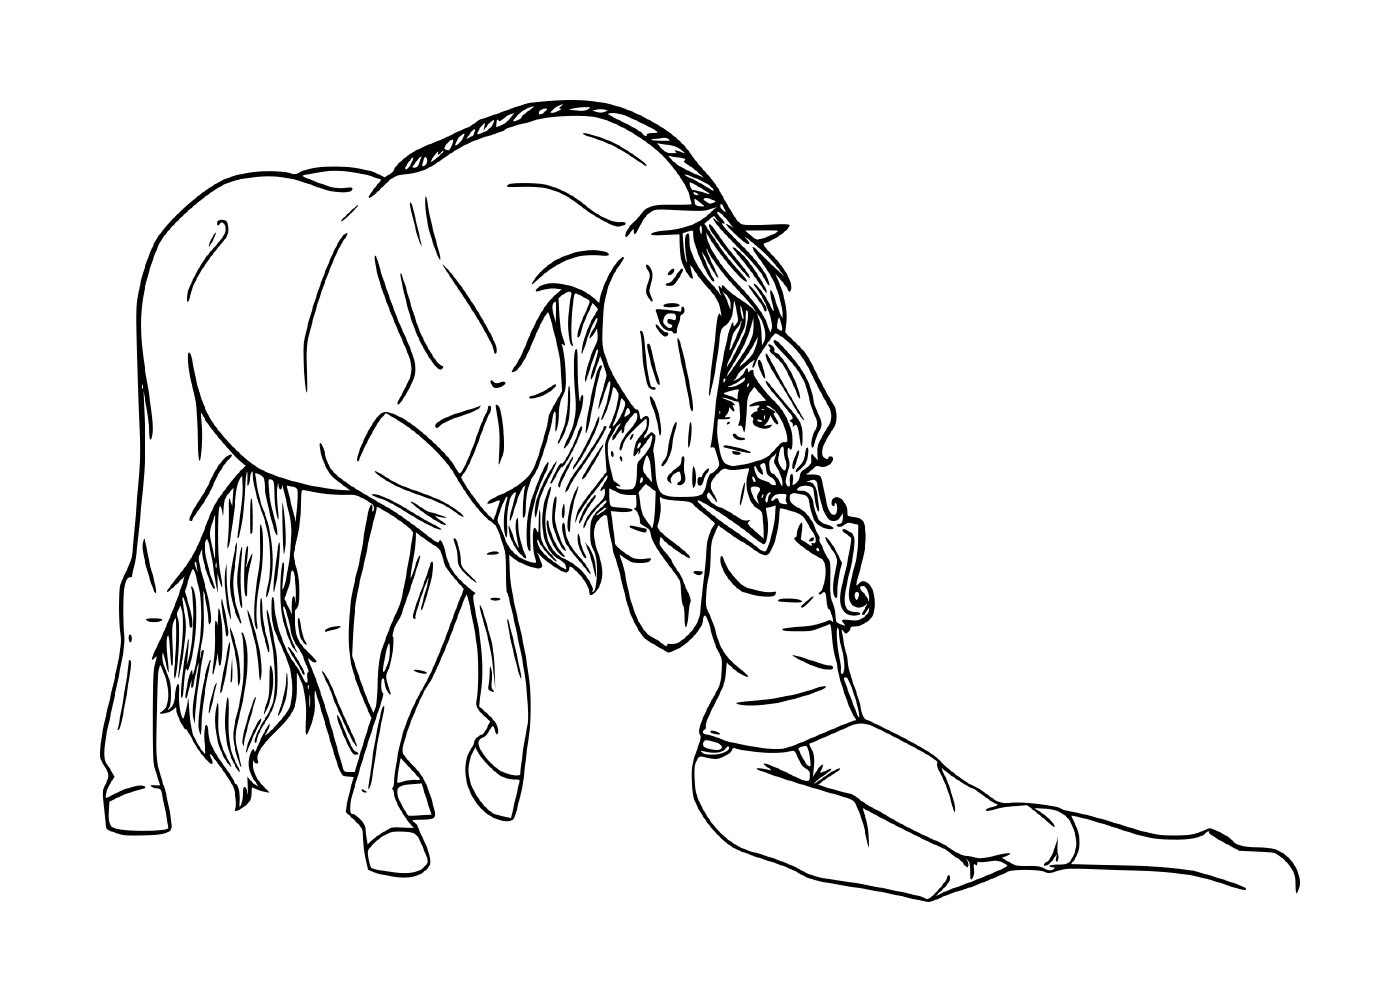  Muchacha compartiendo una conexión especial con su caballo 